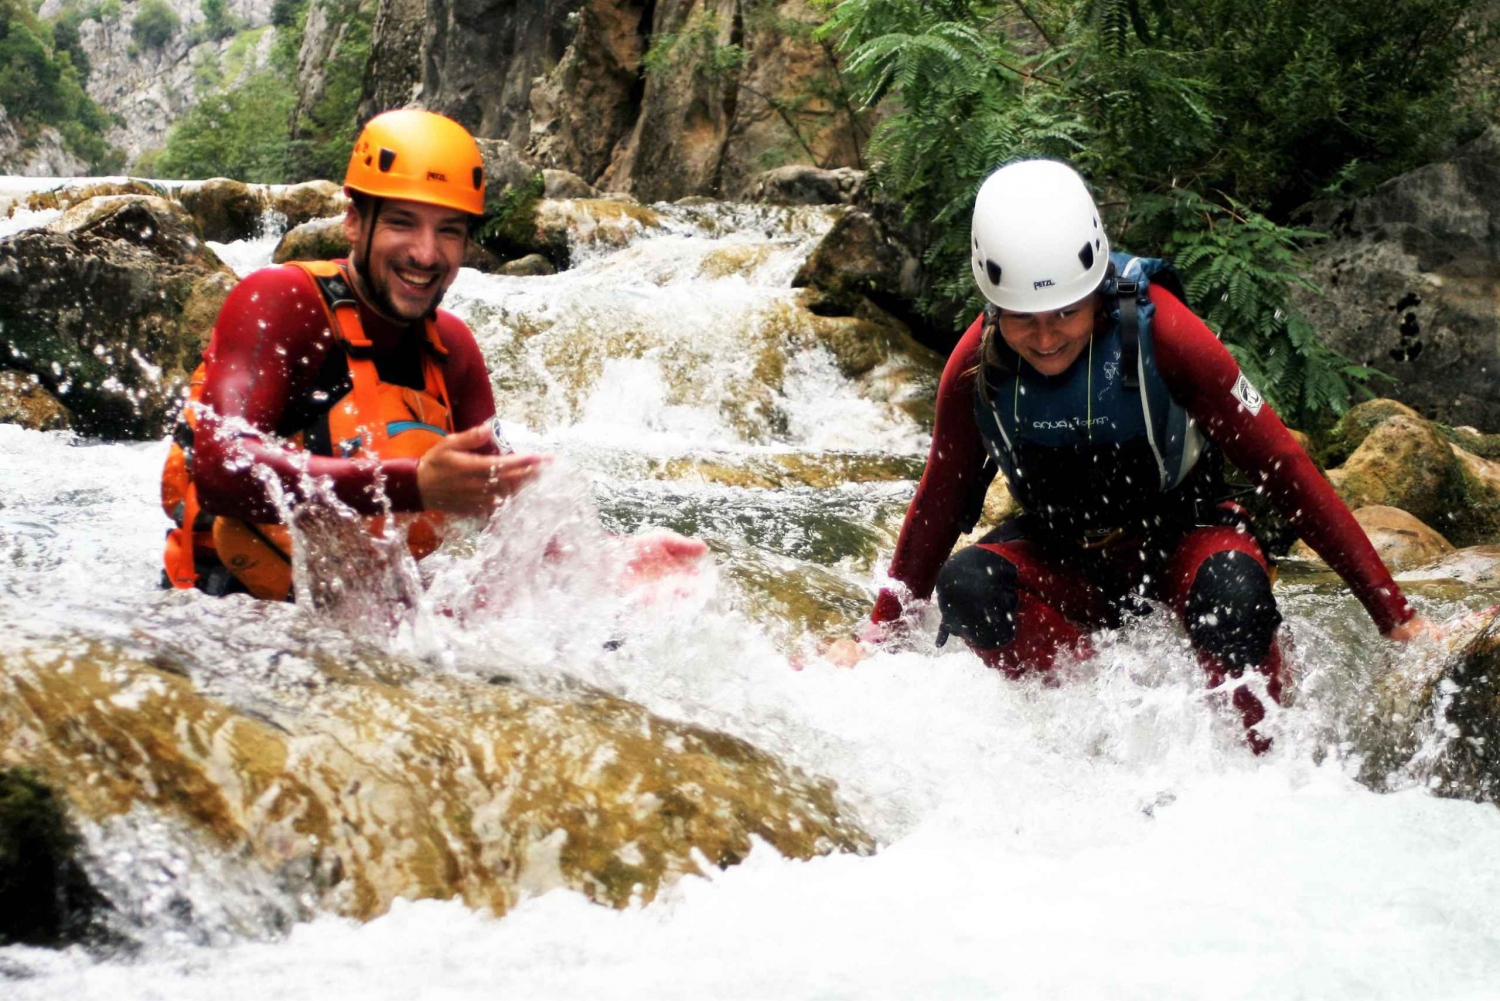 Da Omiš: canyoning sul fiume Cetina con istruttore autorizzato